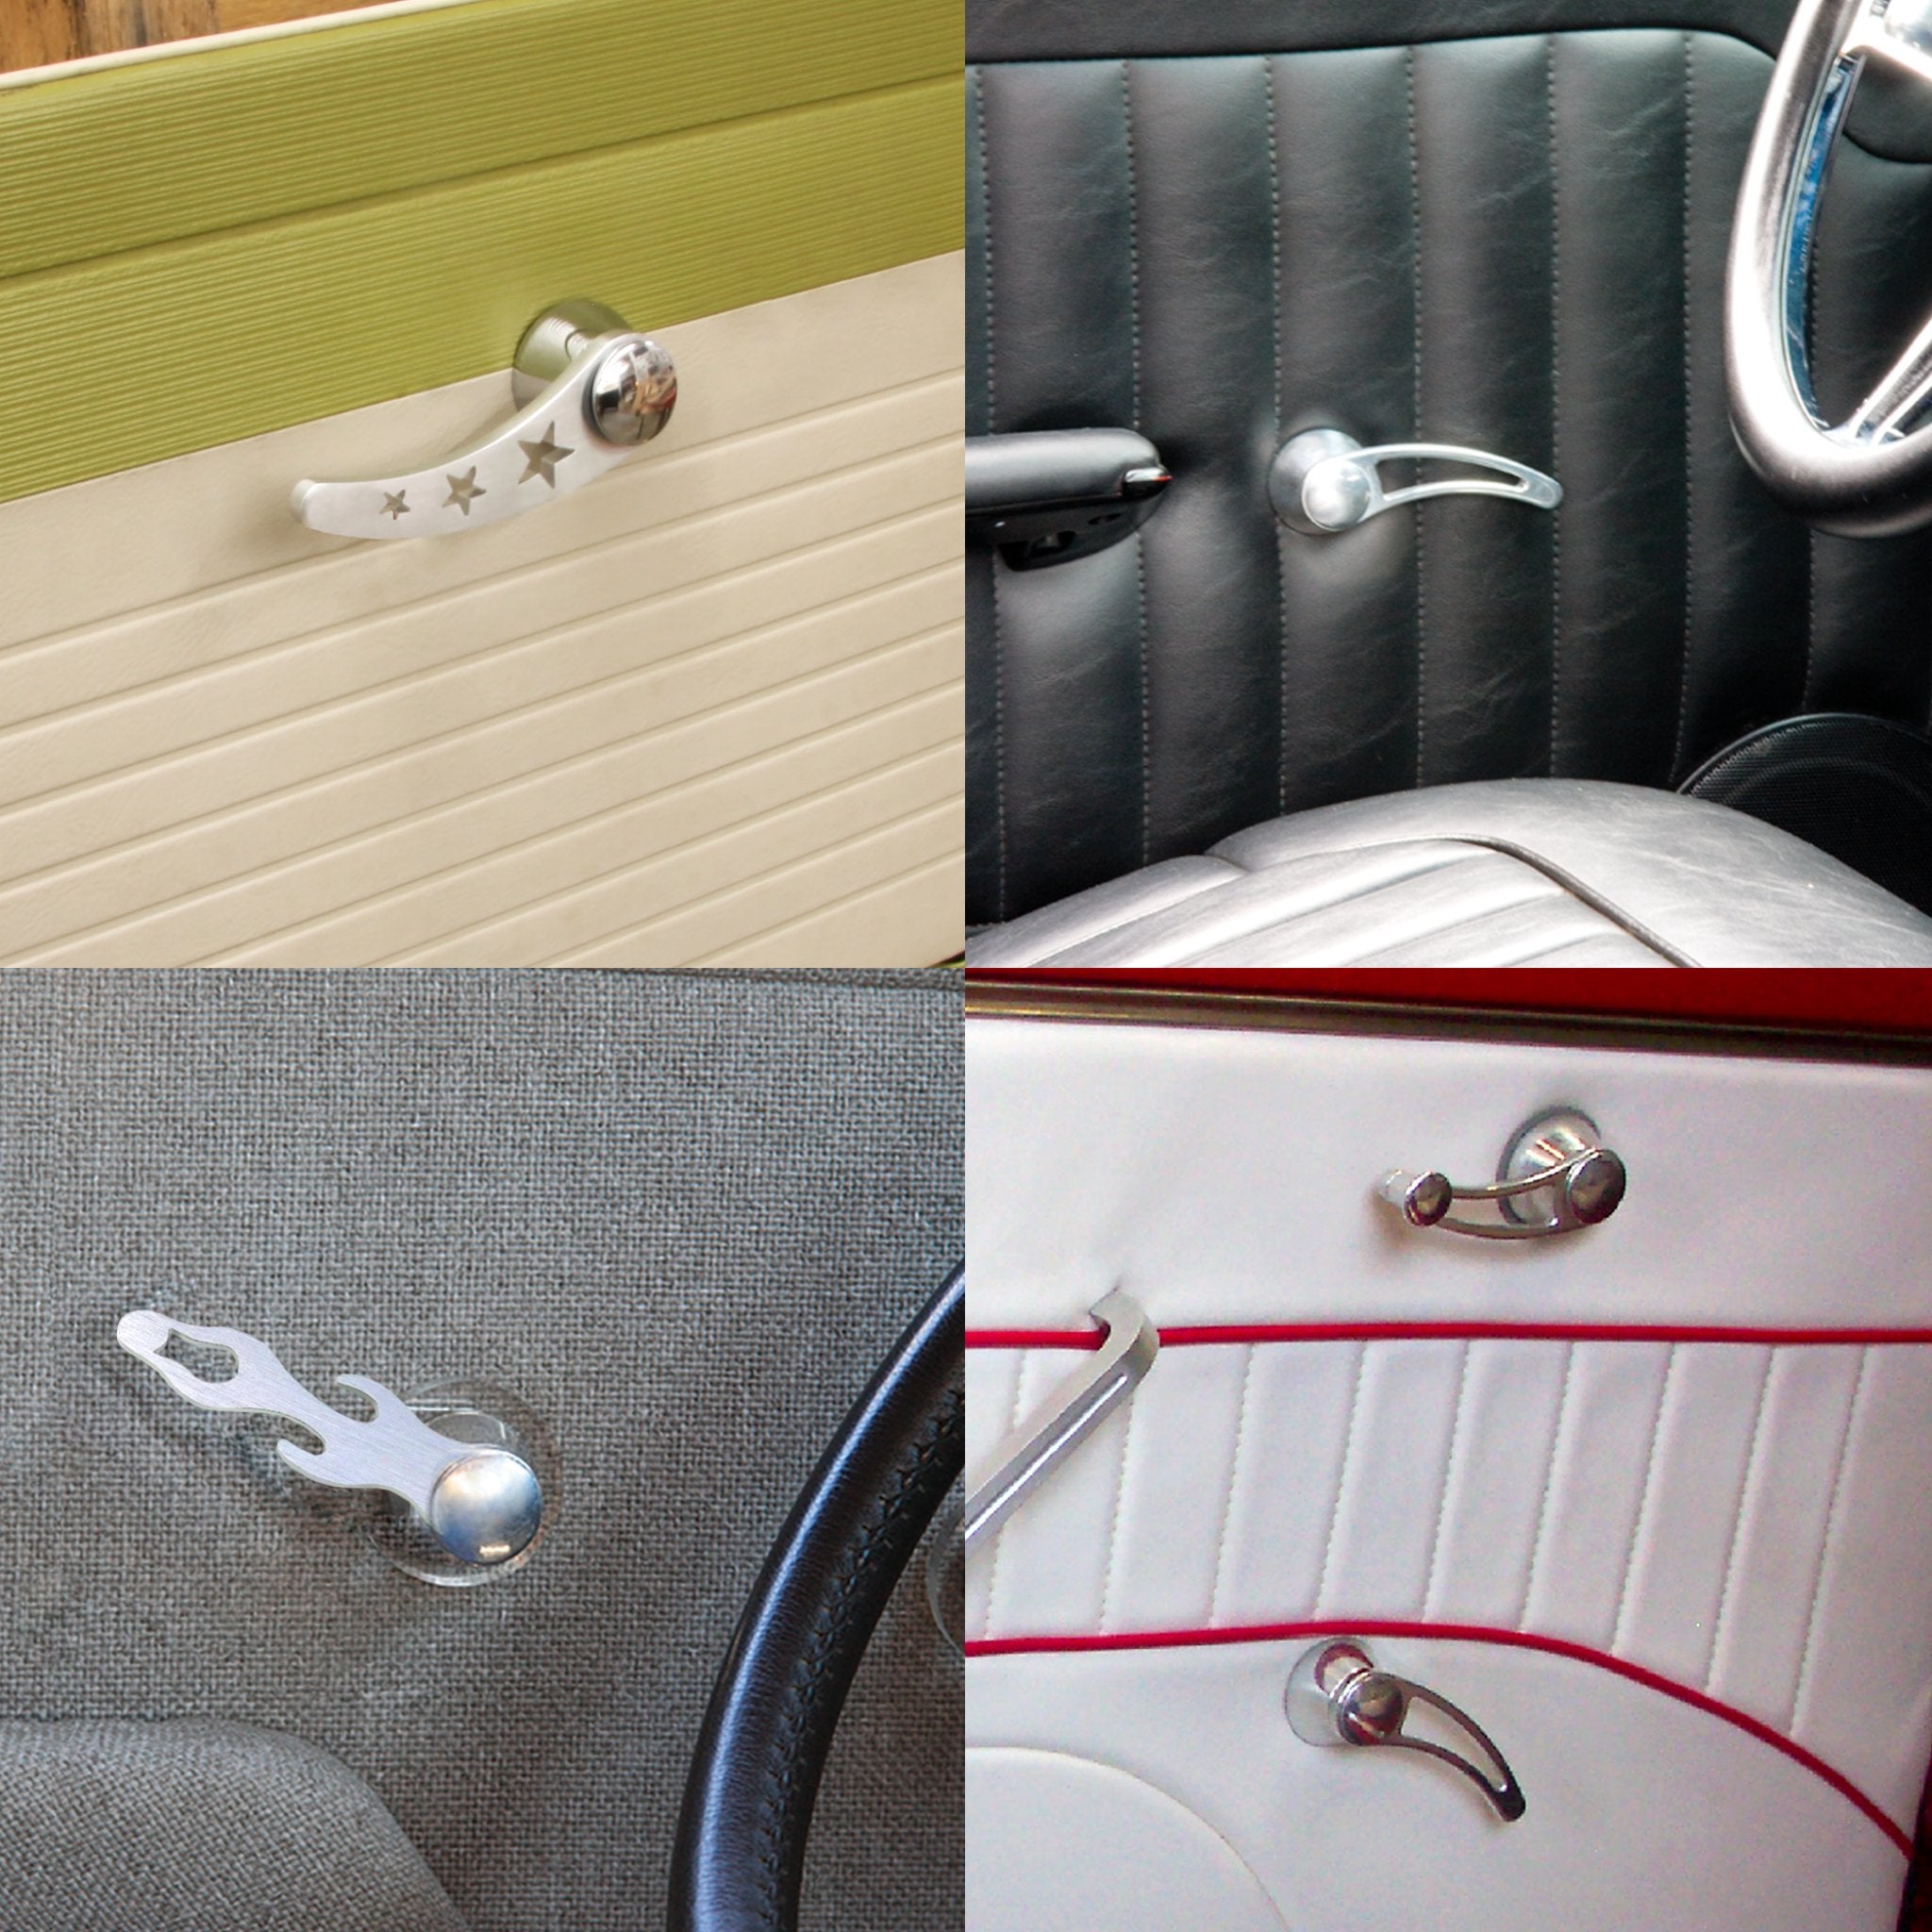 Palancas de manija de puerta interior de coche de aluminio cepillado (par) ajuste universal